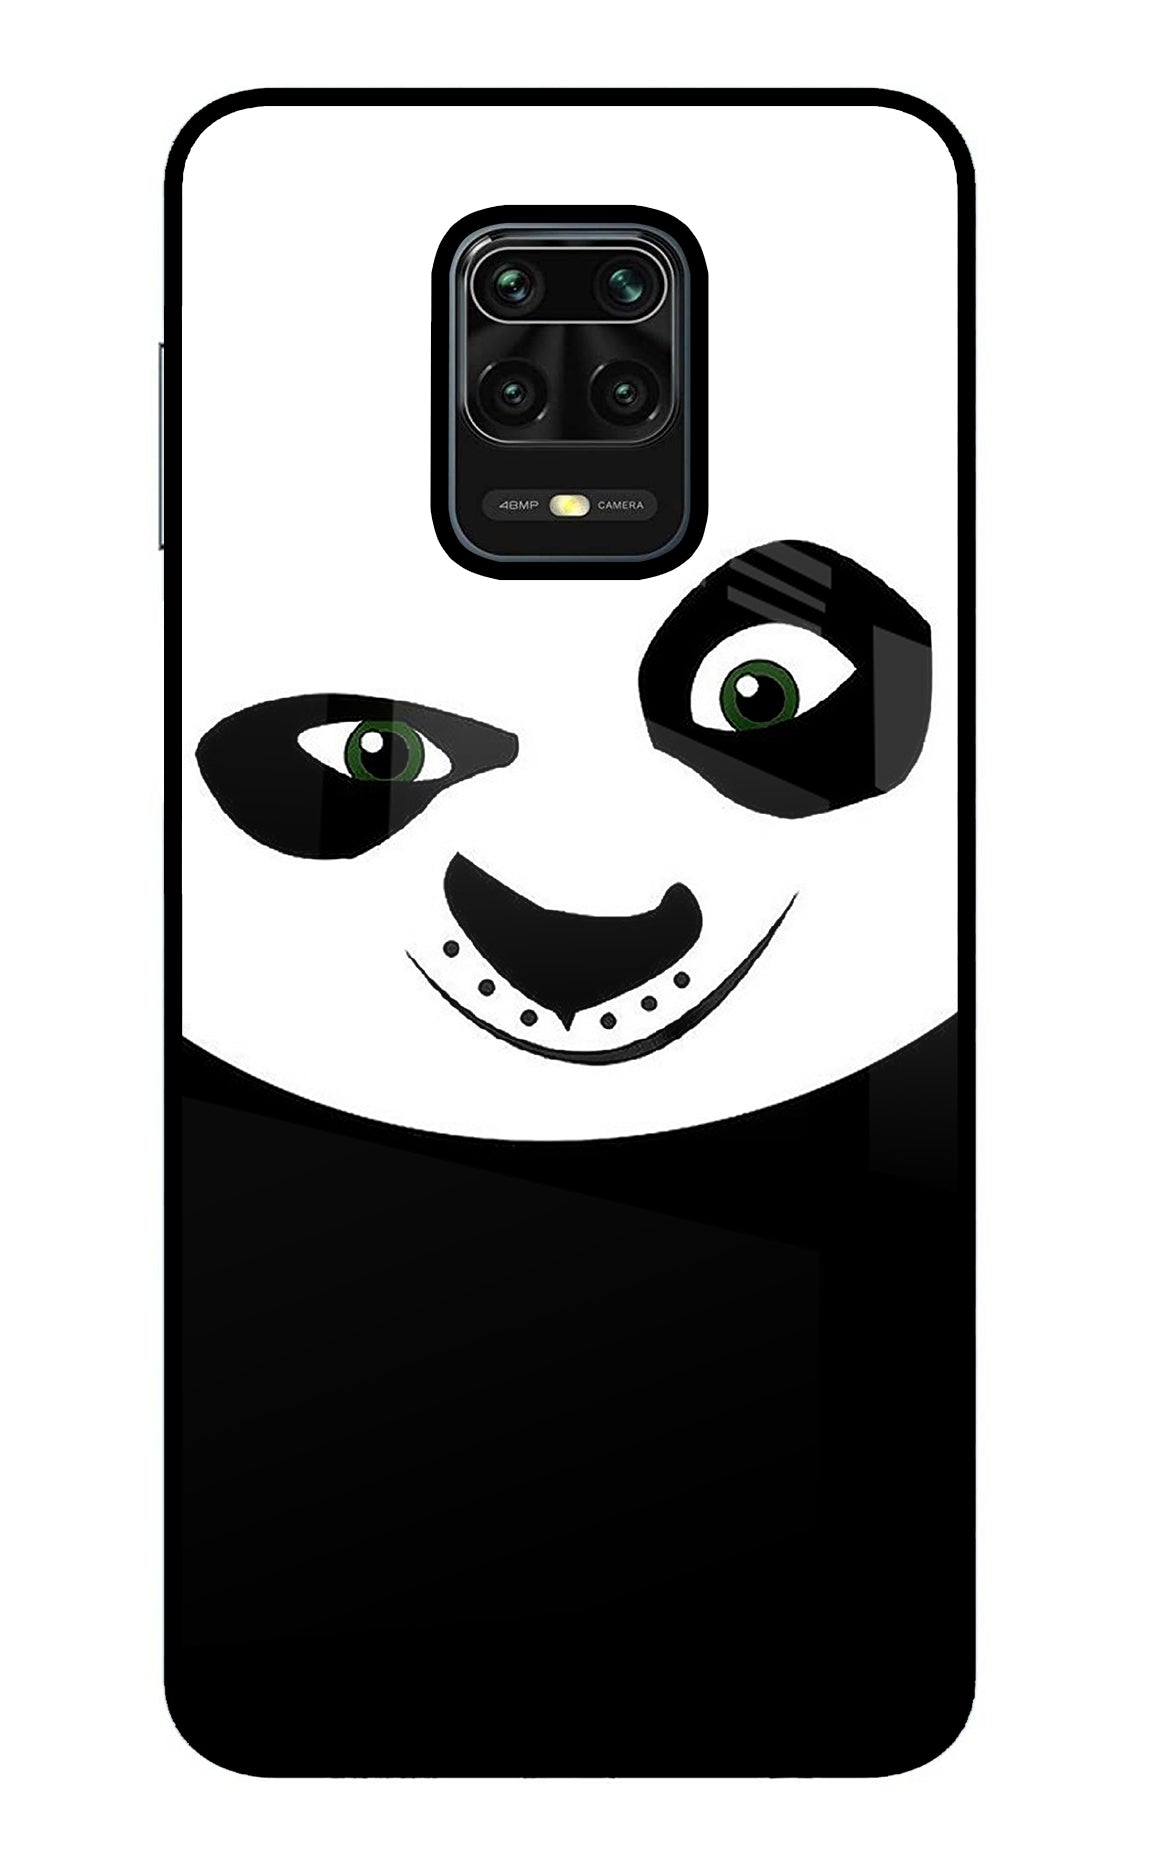 Panda Redmi Note 9 Pro/Pro Max Back Cover